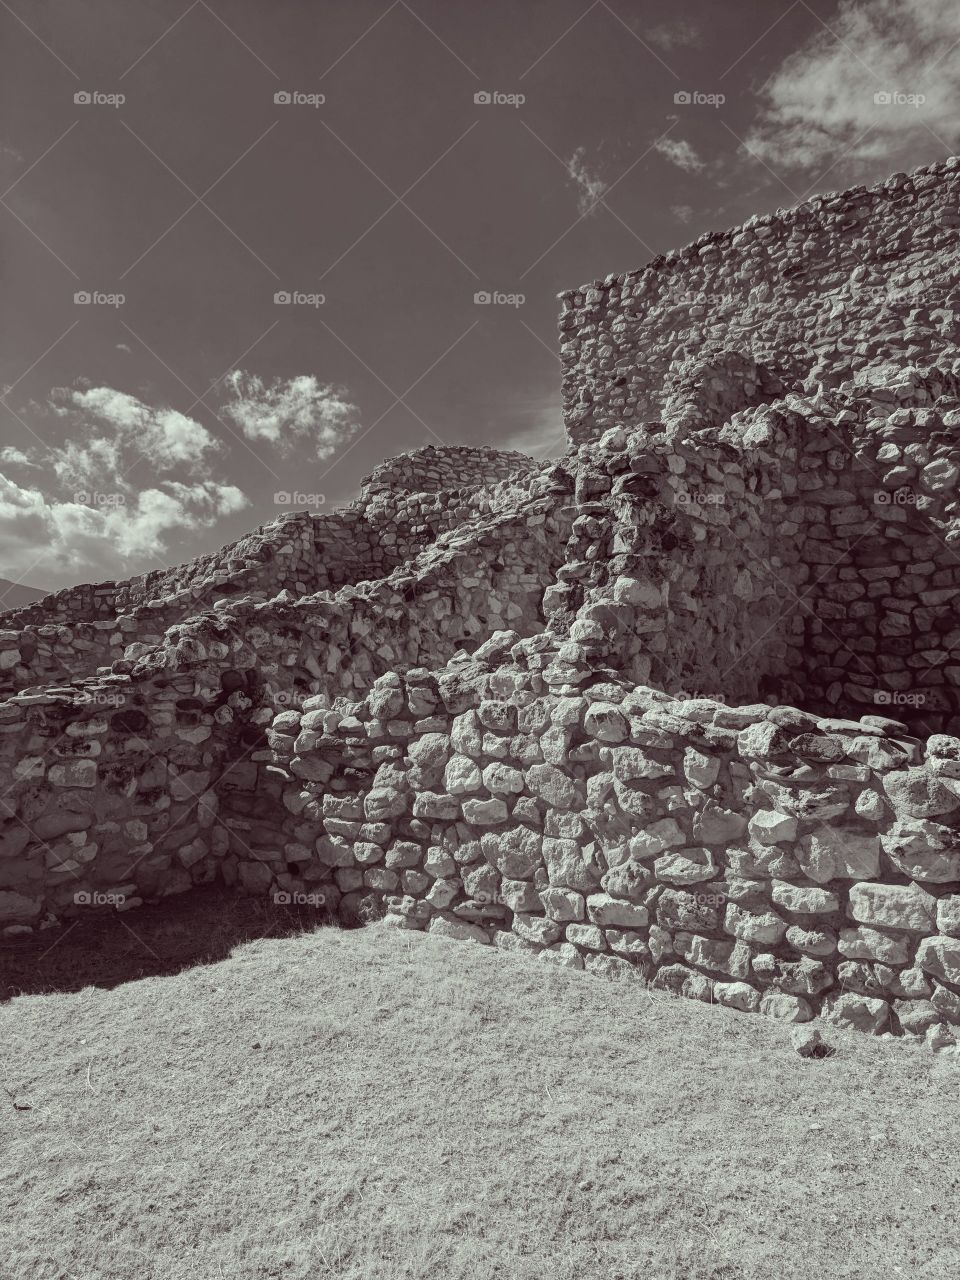 The Ruins of Tuzigoot